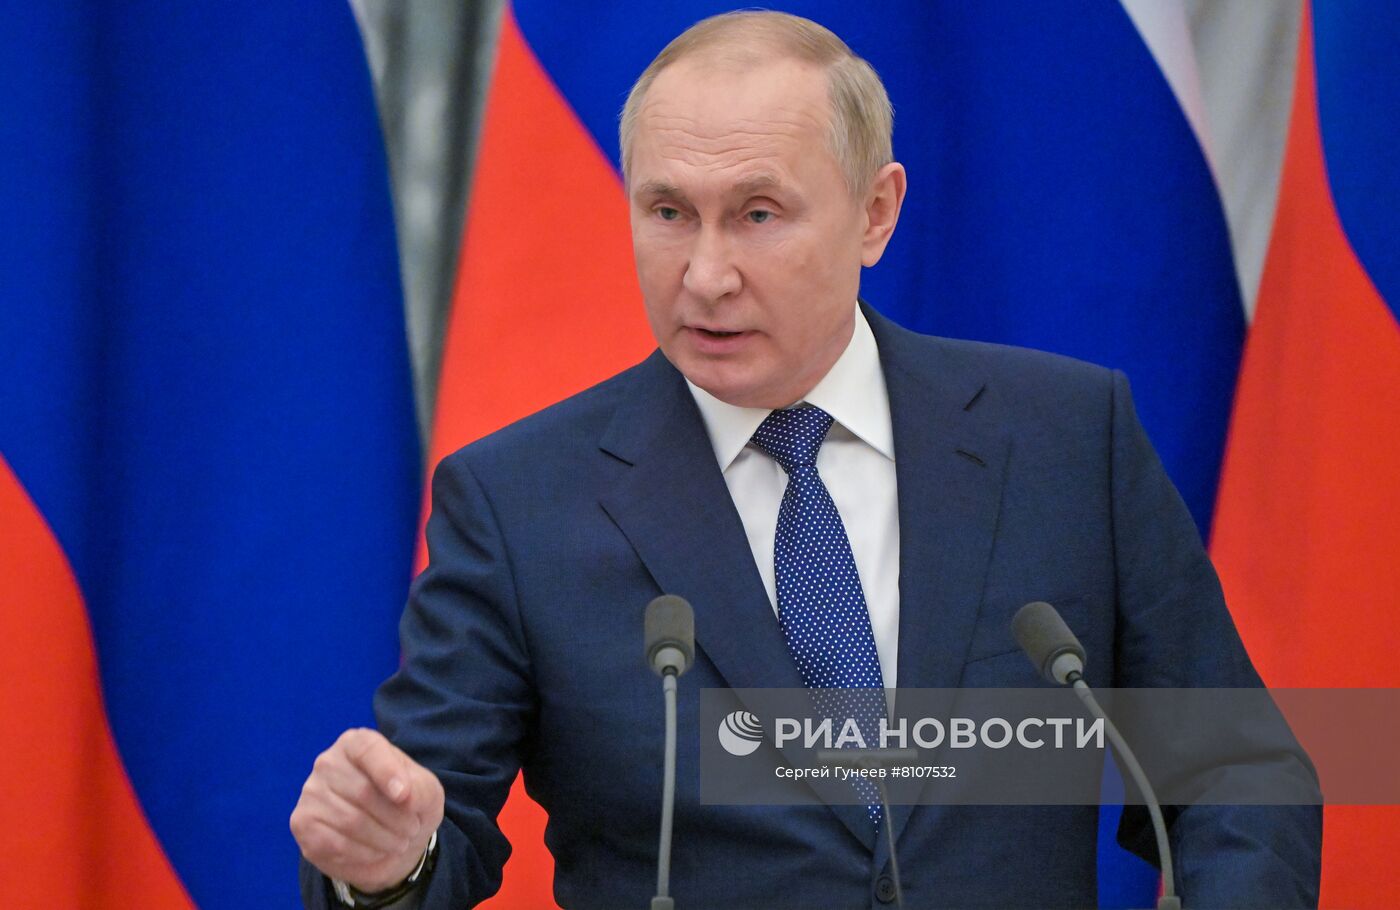 Президент РФ В. Путин провел переговоры с президентом Франции Э. Макроном